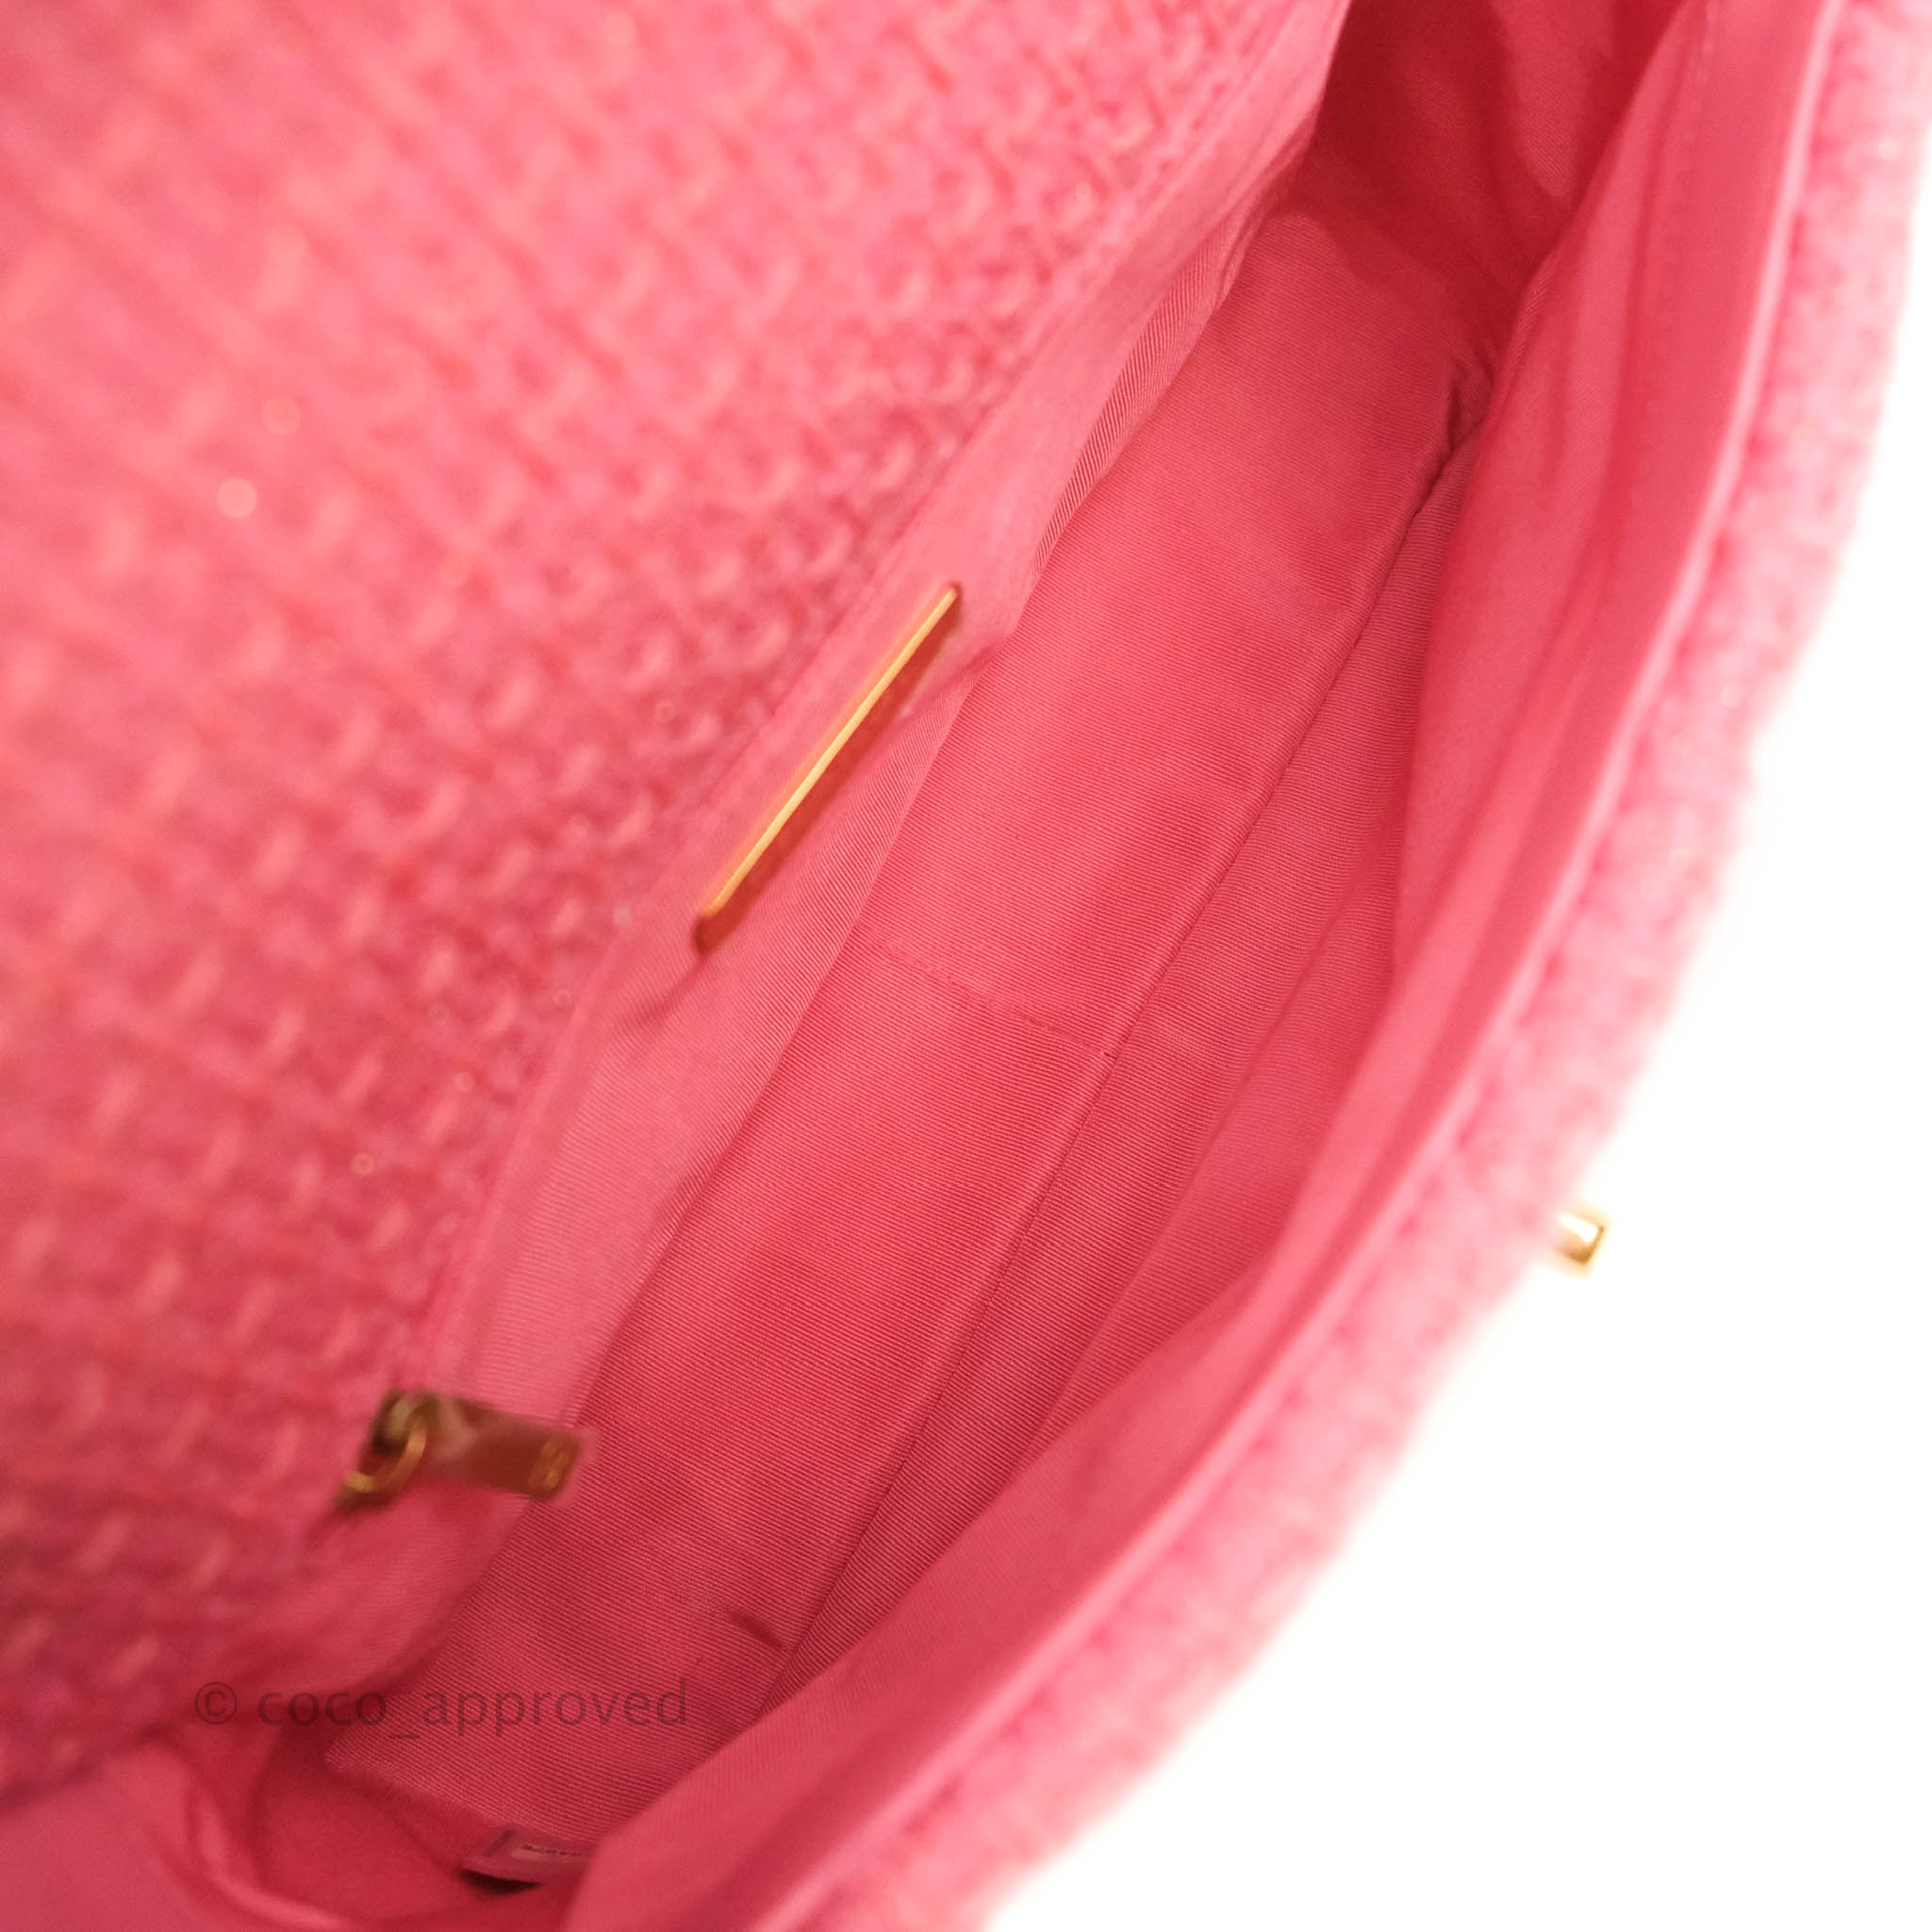 Chanel 19 tweed handbag Chanel Pink in Tweed - 34230311